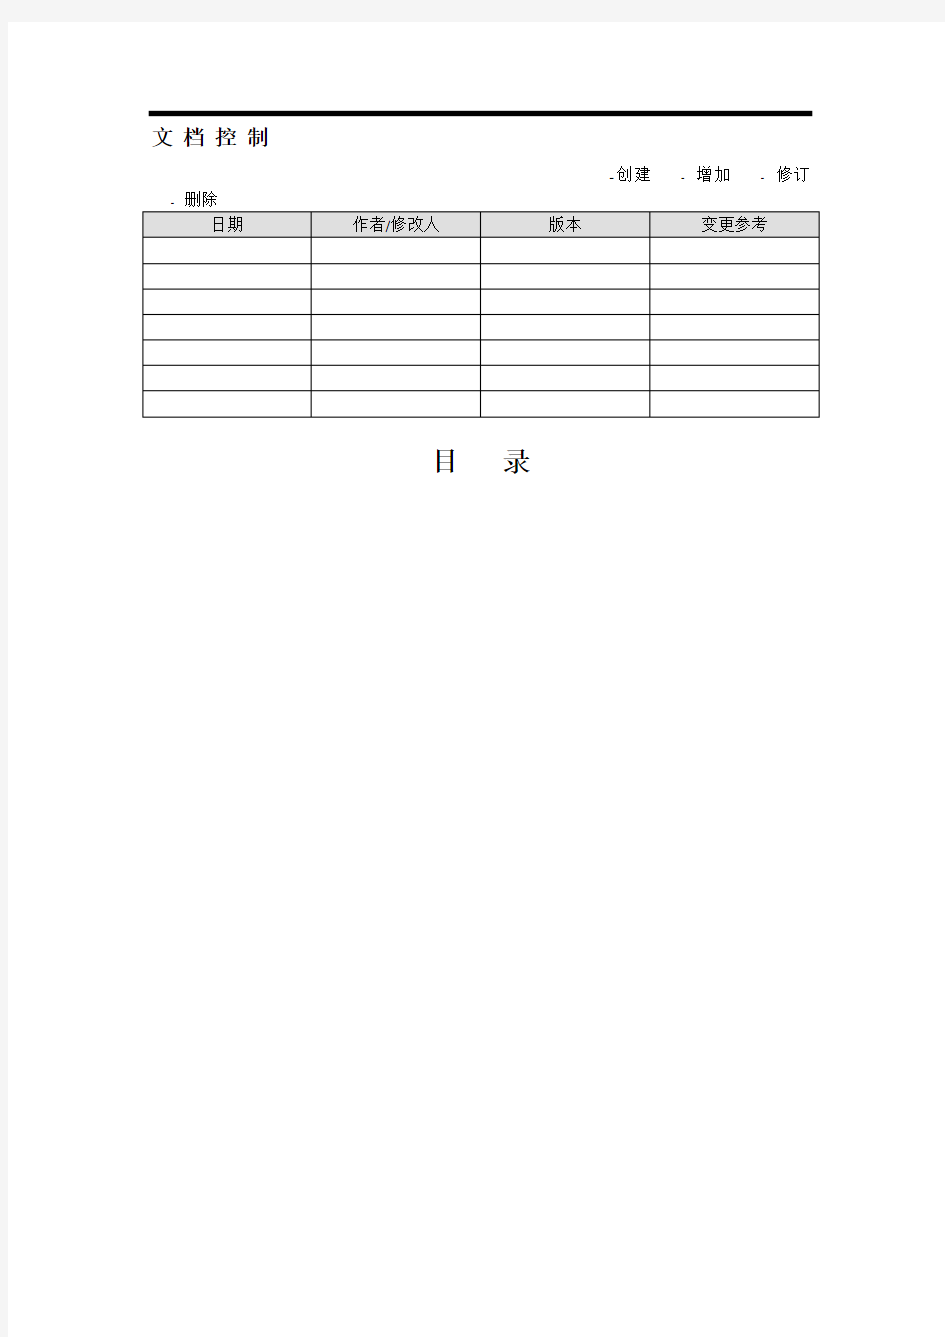 中国联通合作方自服务门户系统操作手册-合作方人员操作